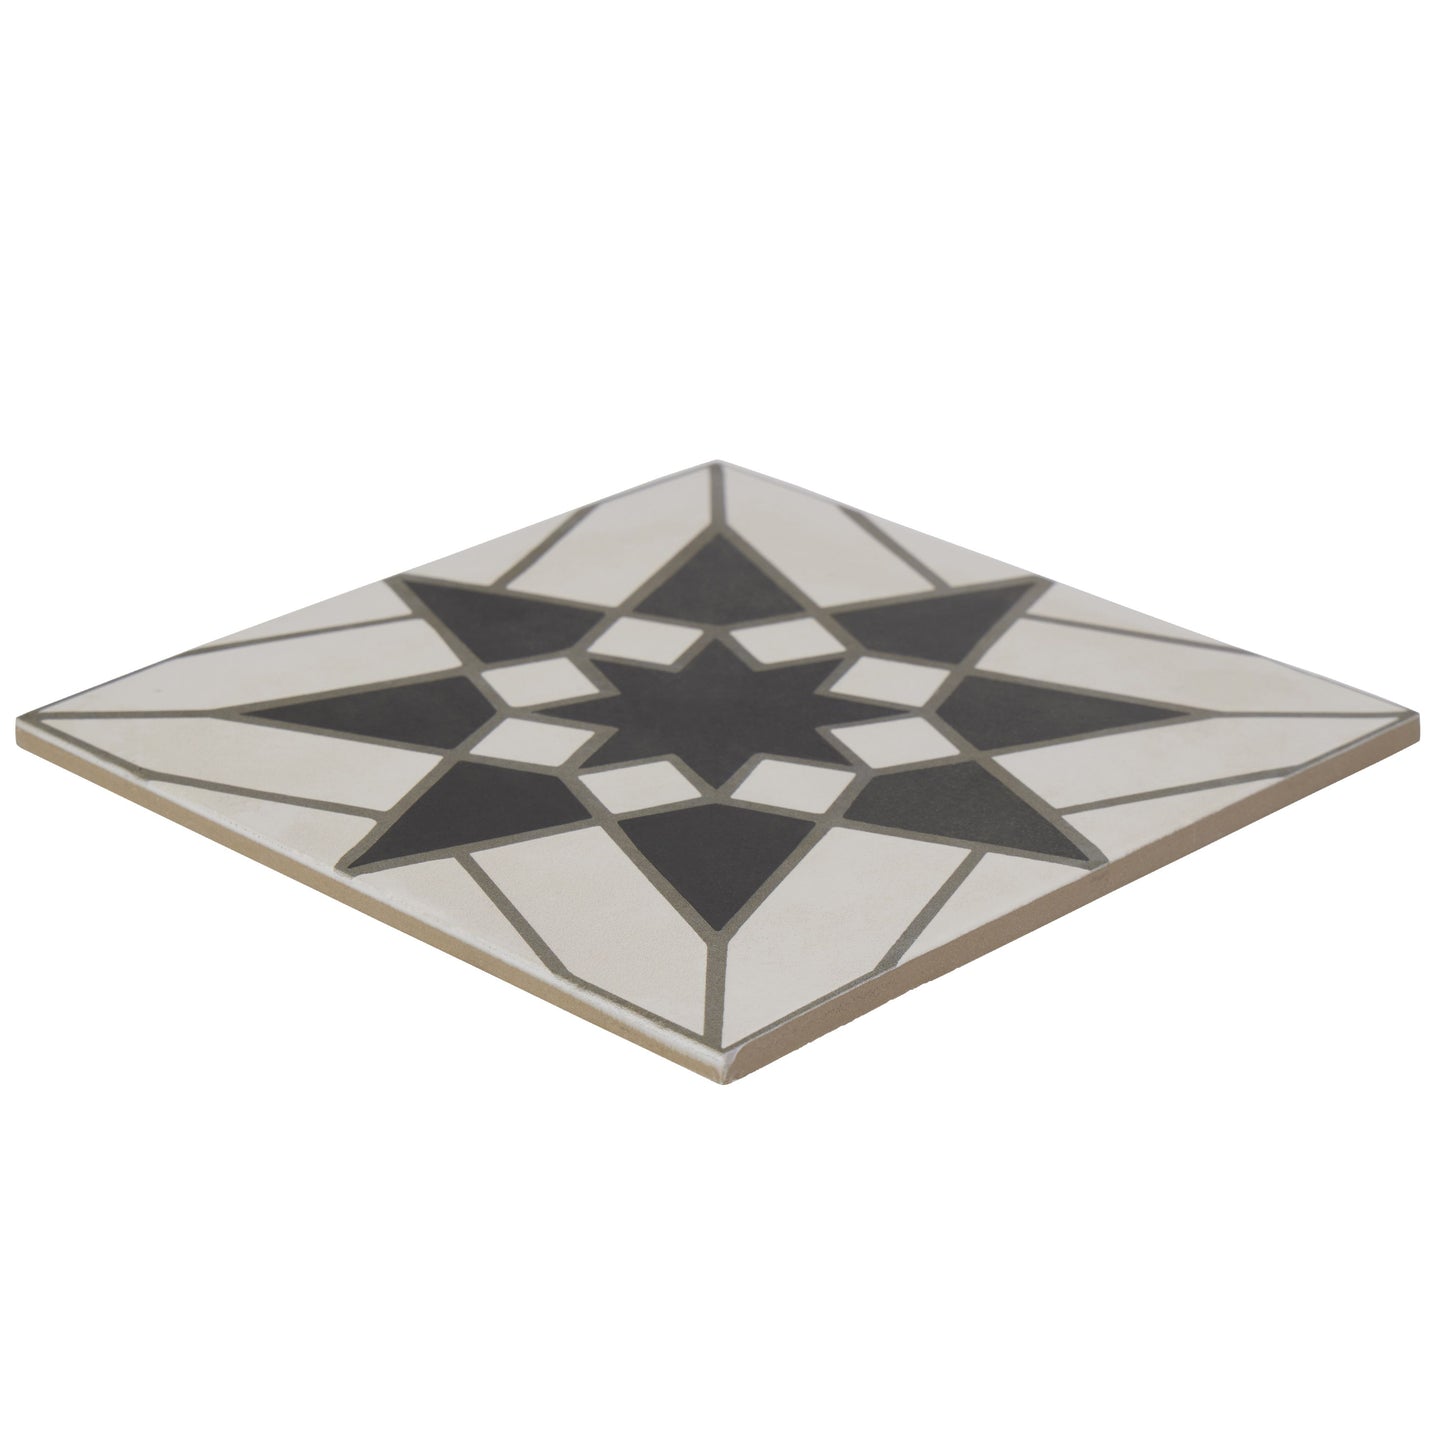 8x8 Splendor White porcelain tile - Industry Tile